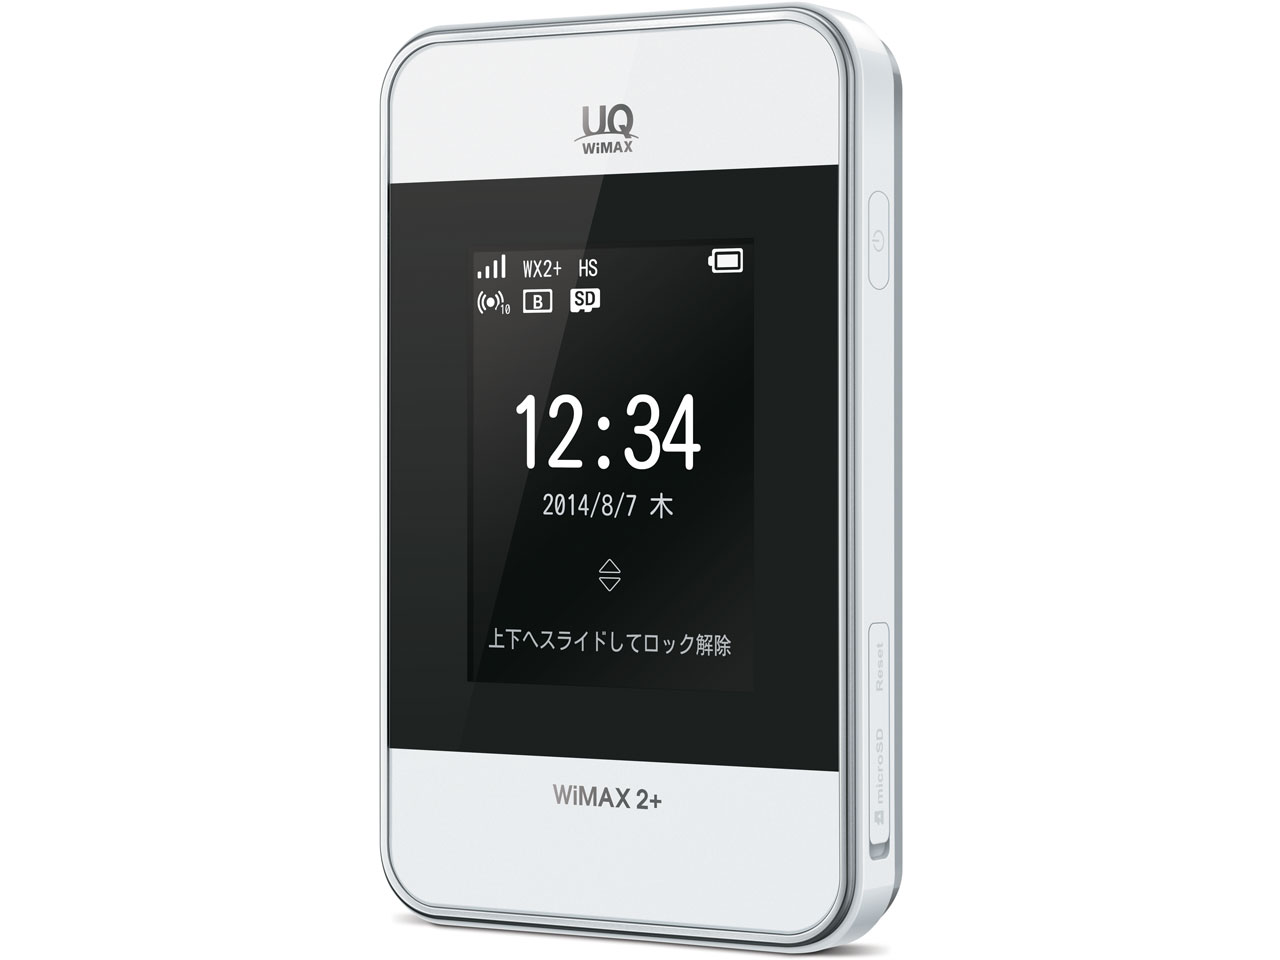 『本体1』 Wi-Fi WALKER WiMAX 2+ HWD15_UQ [ホワイト] の製品画像